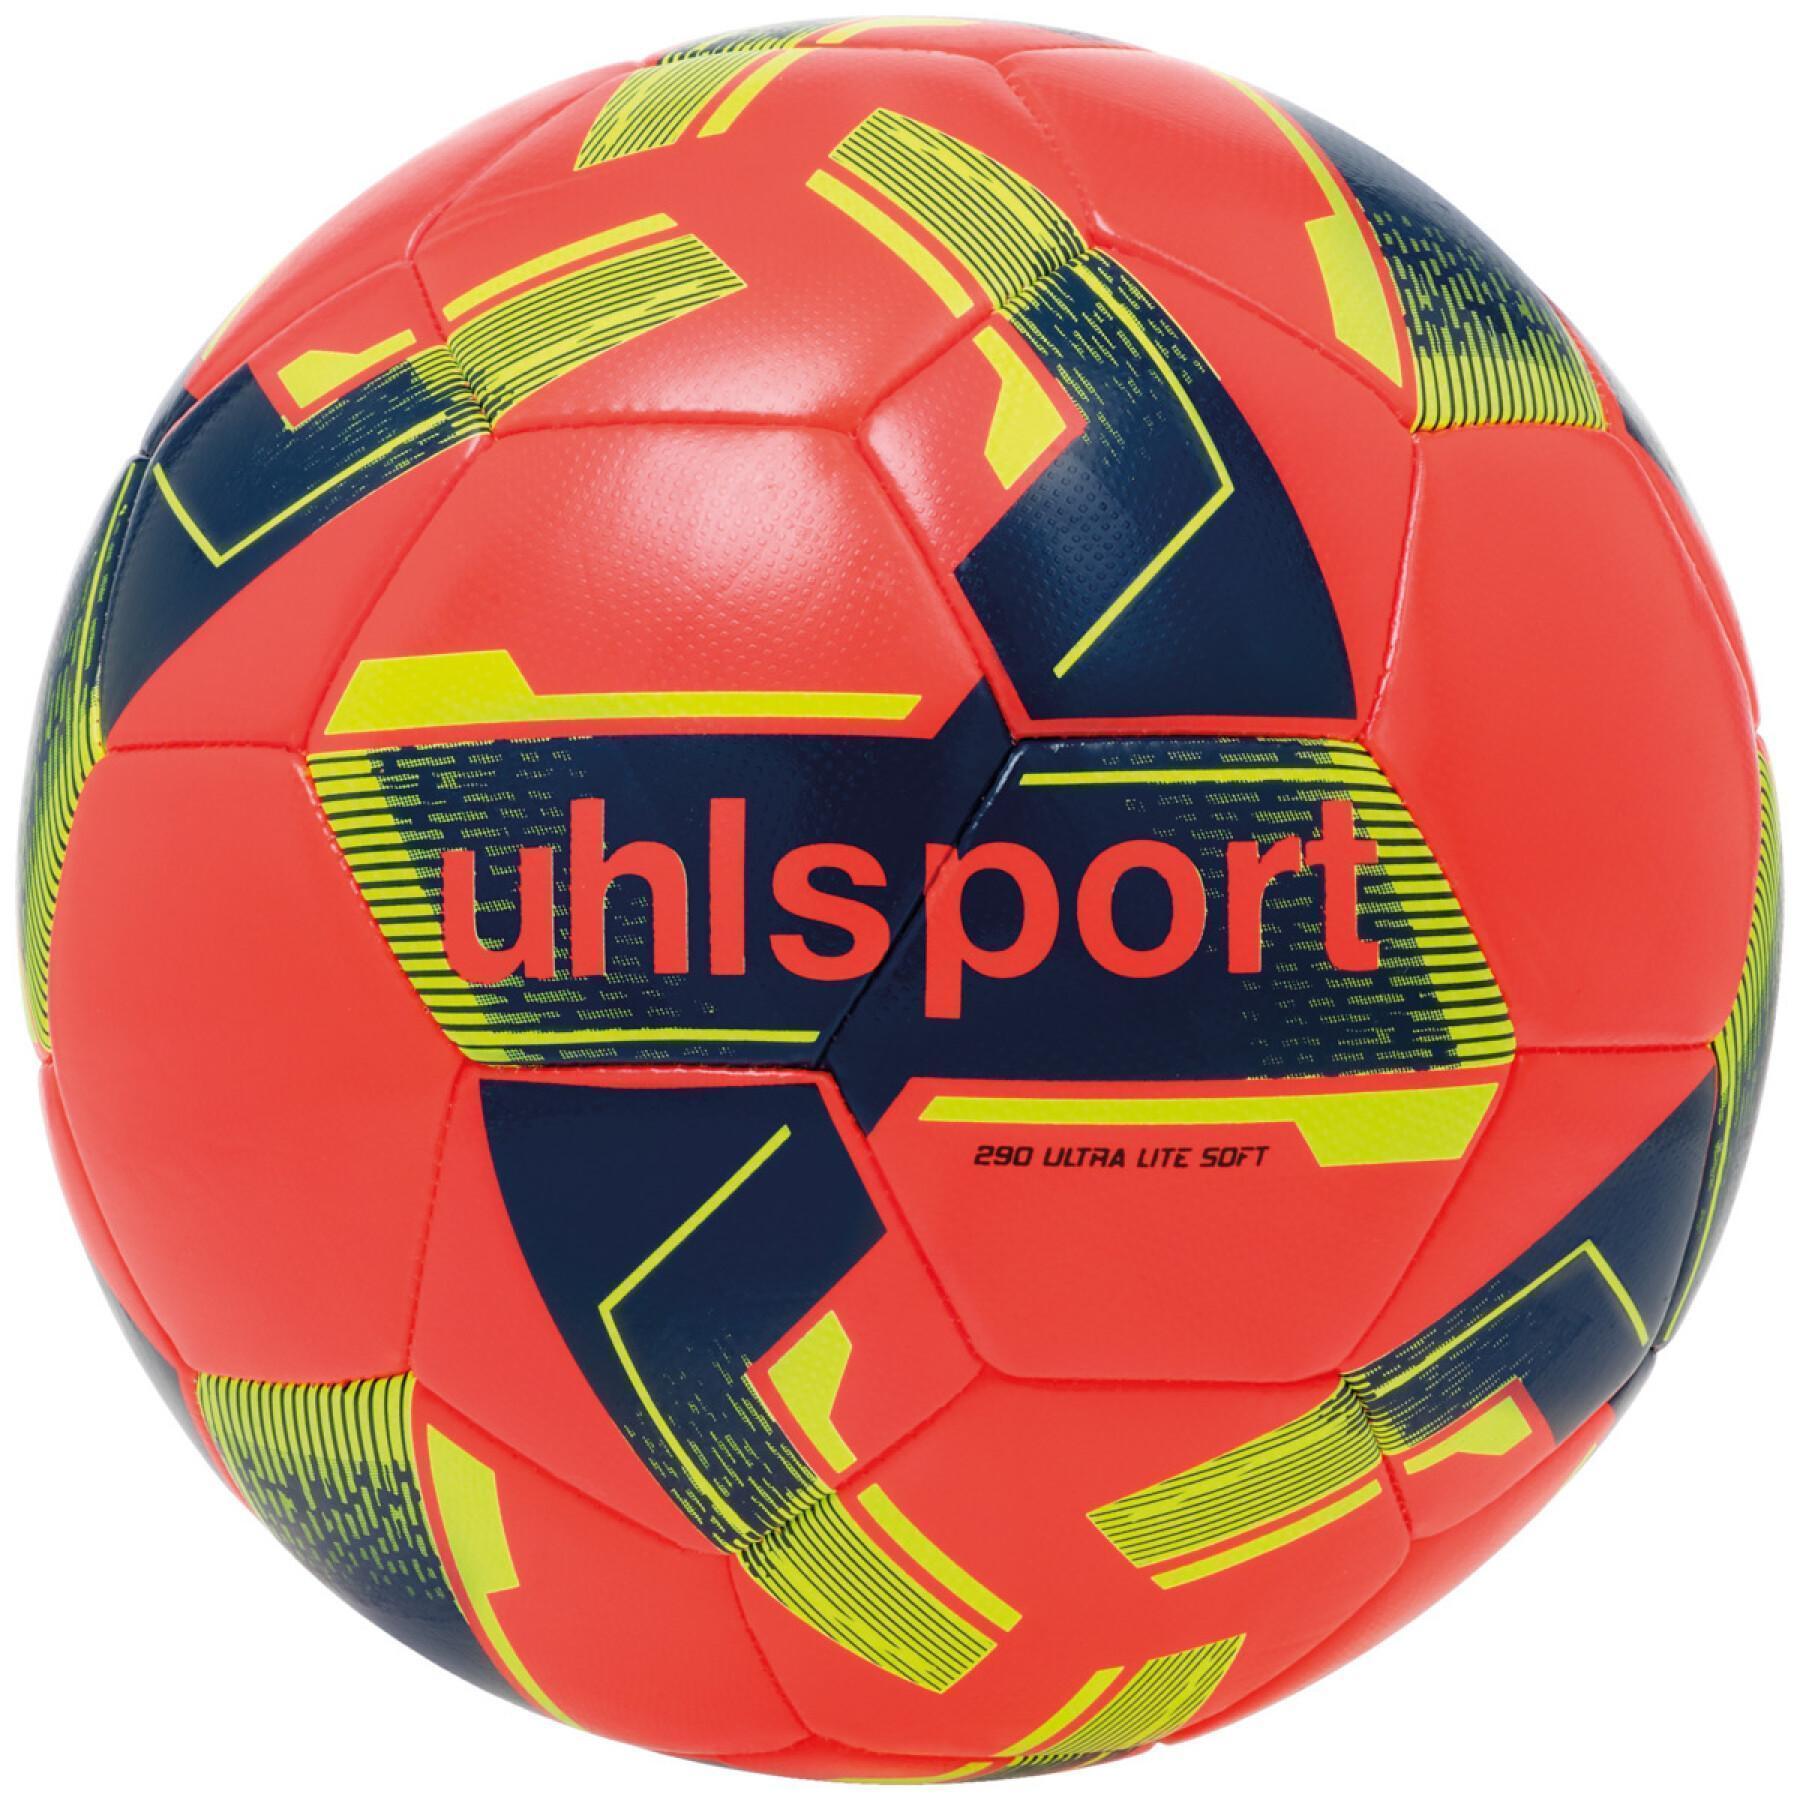 Kinderfußball Uhlsport Ultra Lite Soft 290